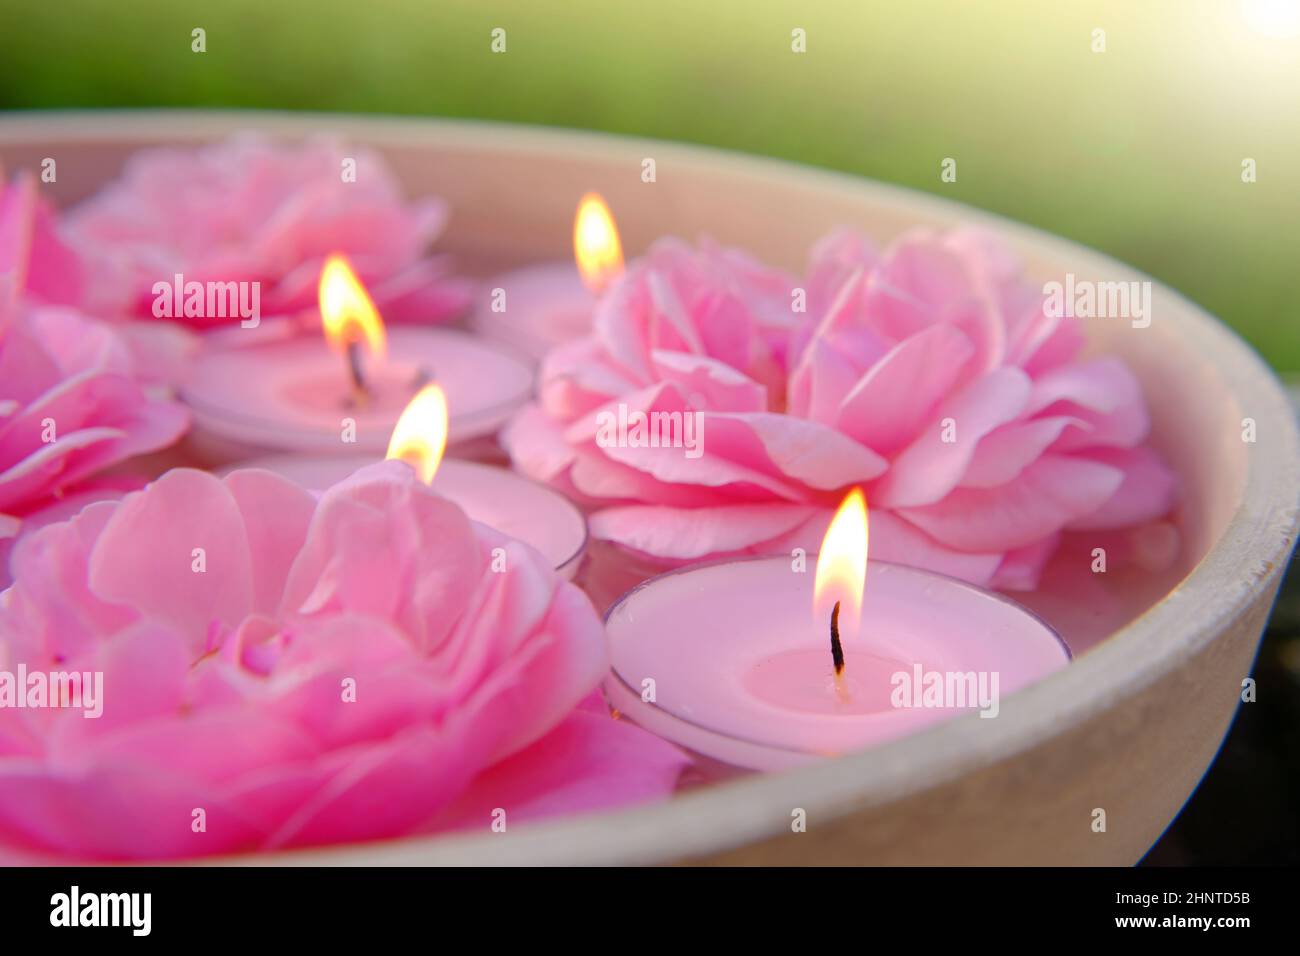 Rosenkerzen.Rosa brennende Kerzen und rosa Rosen im Wasser.Aromatherapie und Spa.Kerzenflamme. Kerzen Hintergrund.brennende Kerzen Set Stockfoto